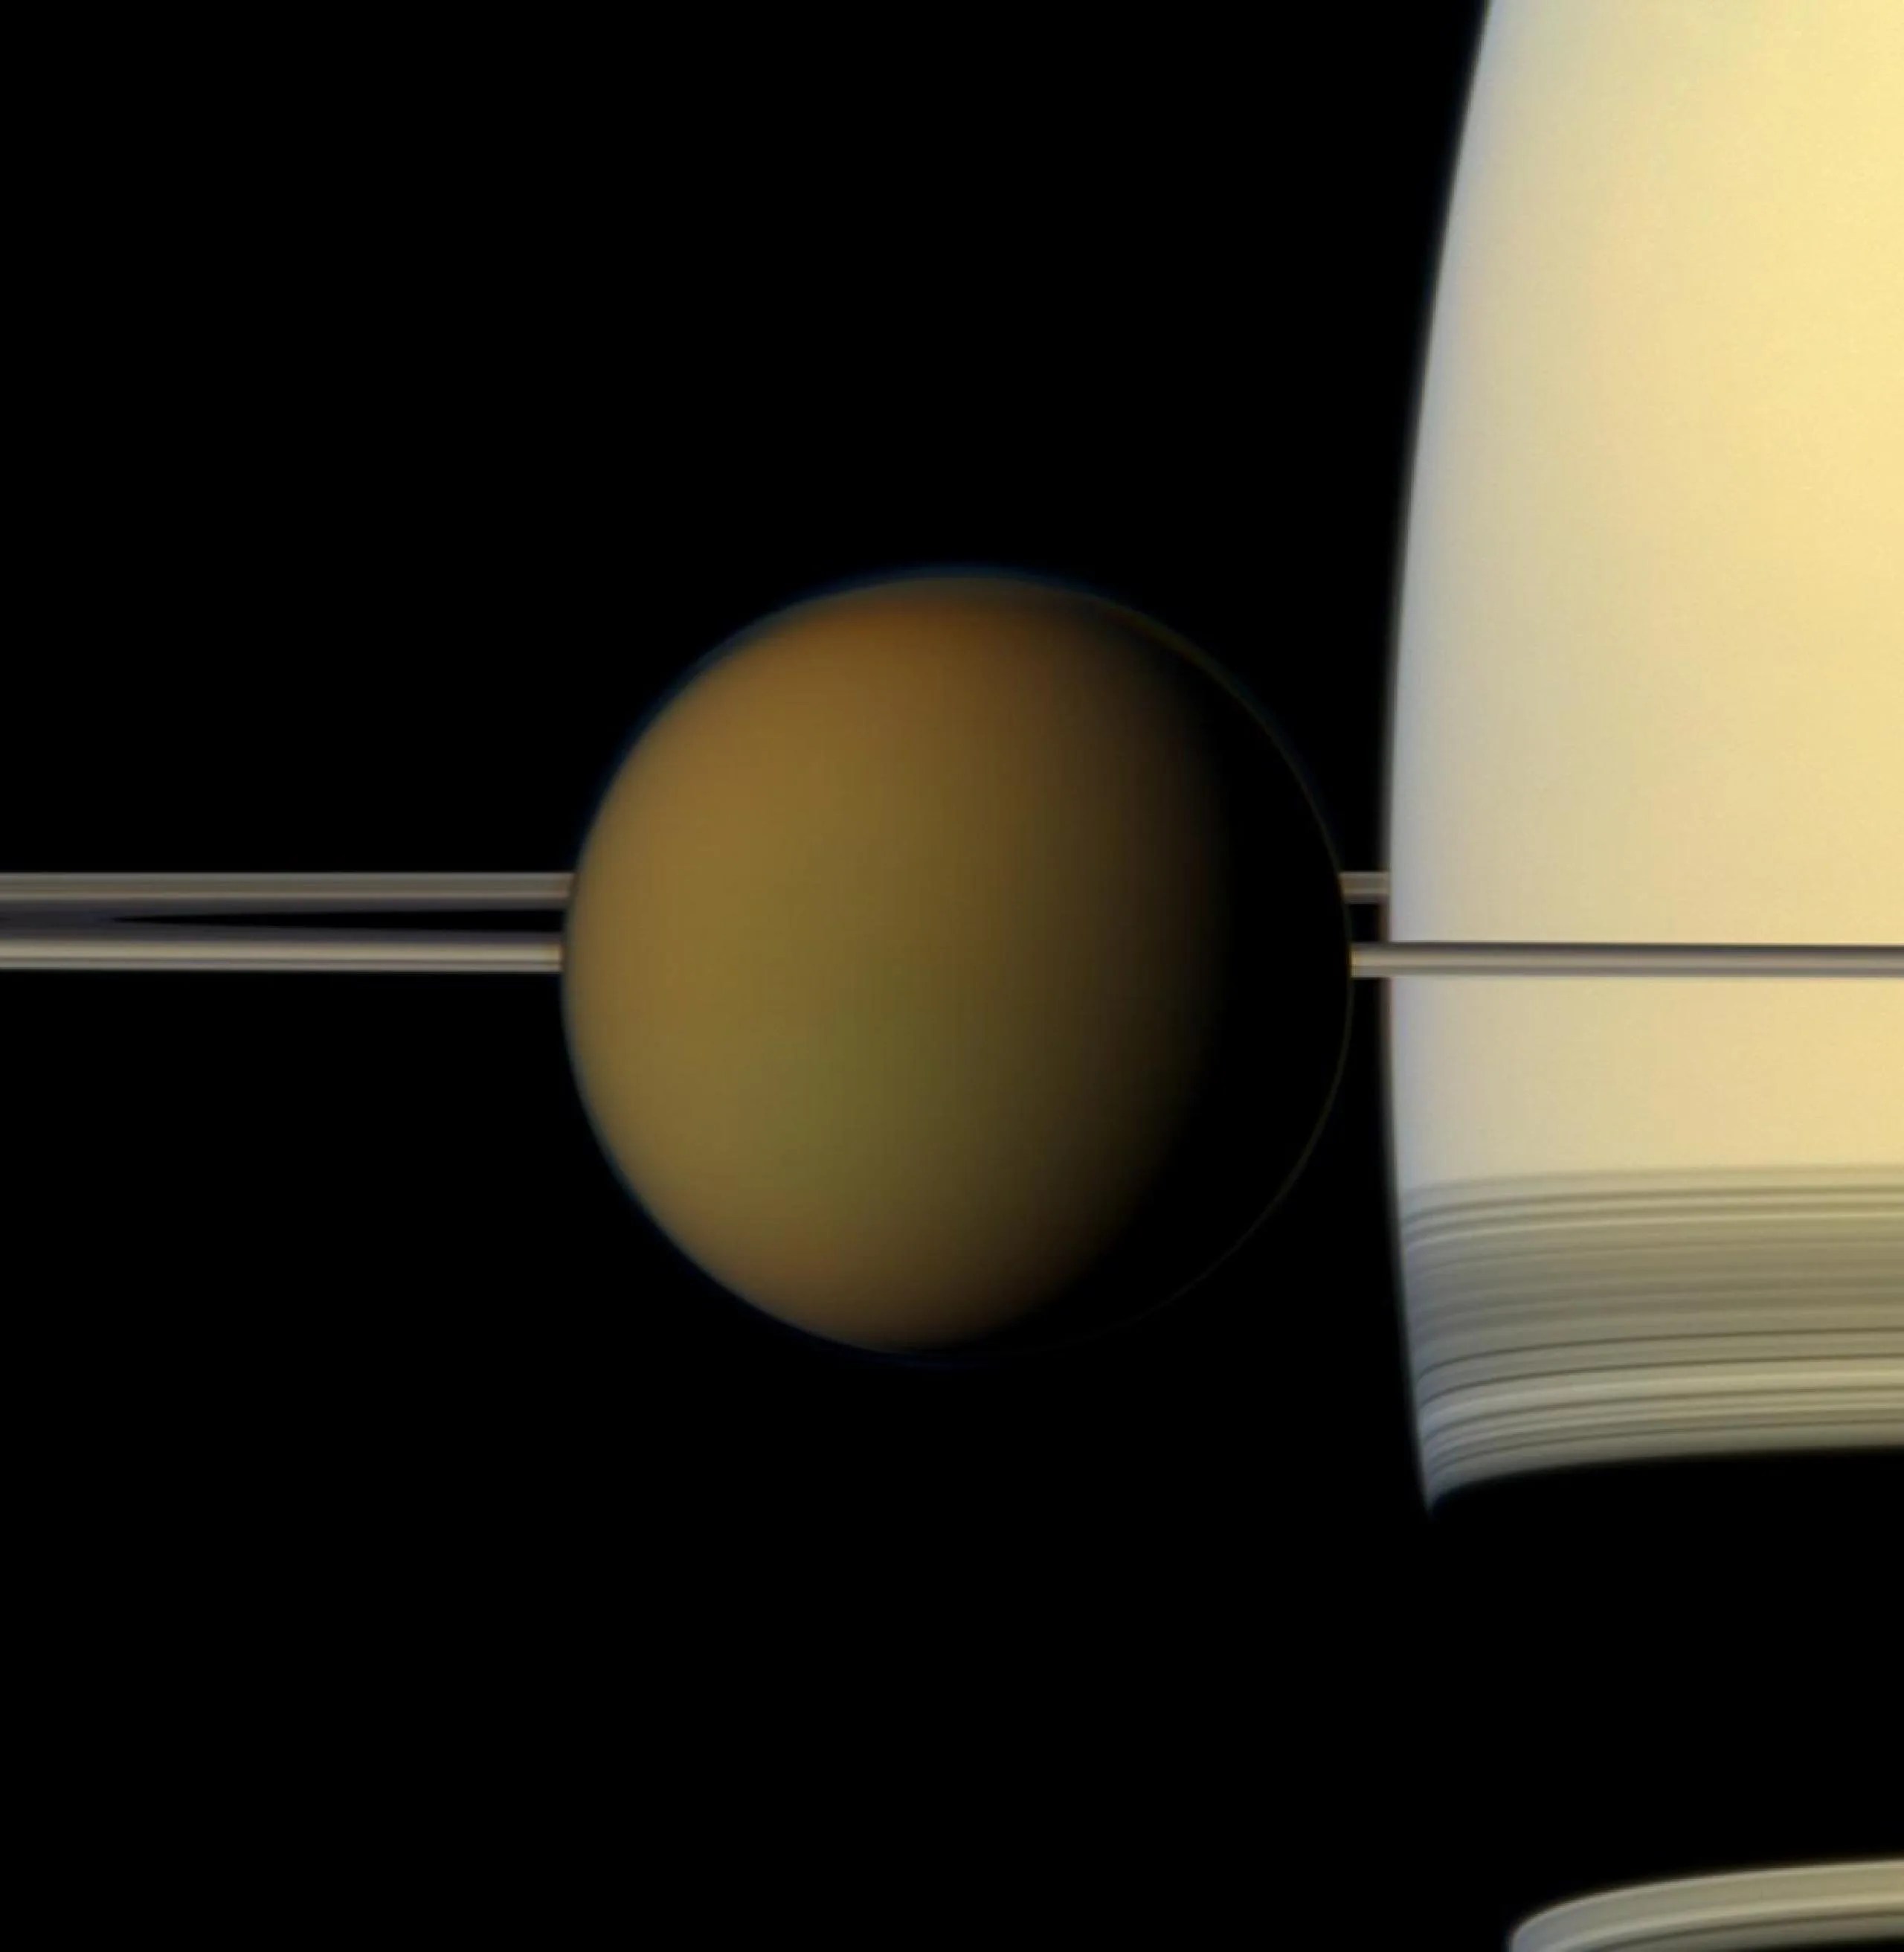 El colorido globo de la luna más grande de Saturno, Titán, pasa frente al planeta y sus anillos en esta imagen de color natural captada por la nave espacial Cassini de la NASA.